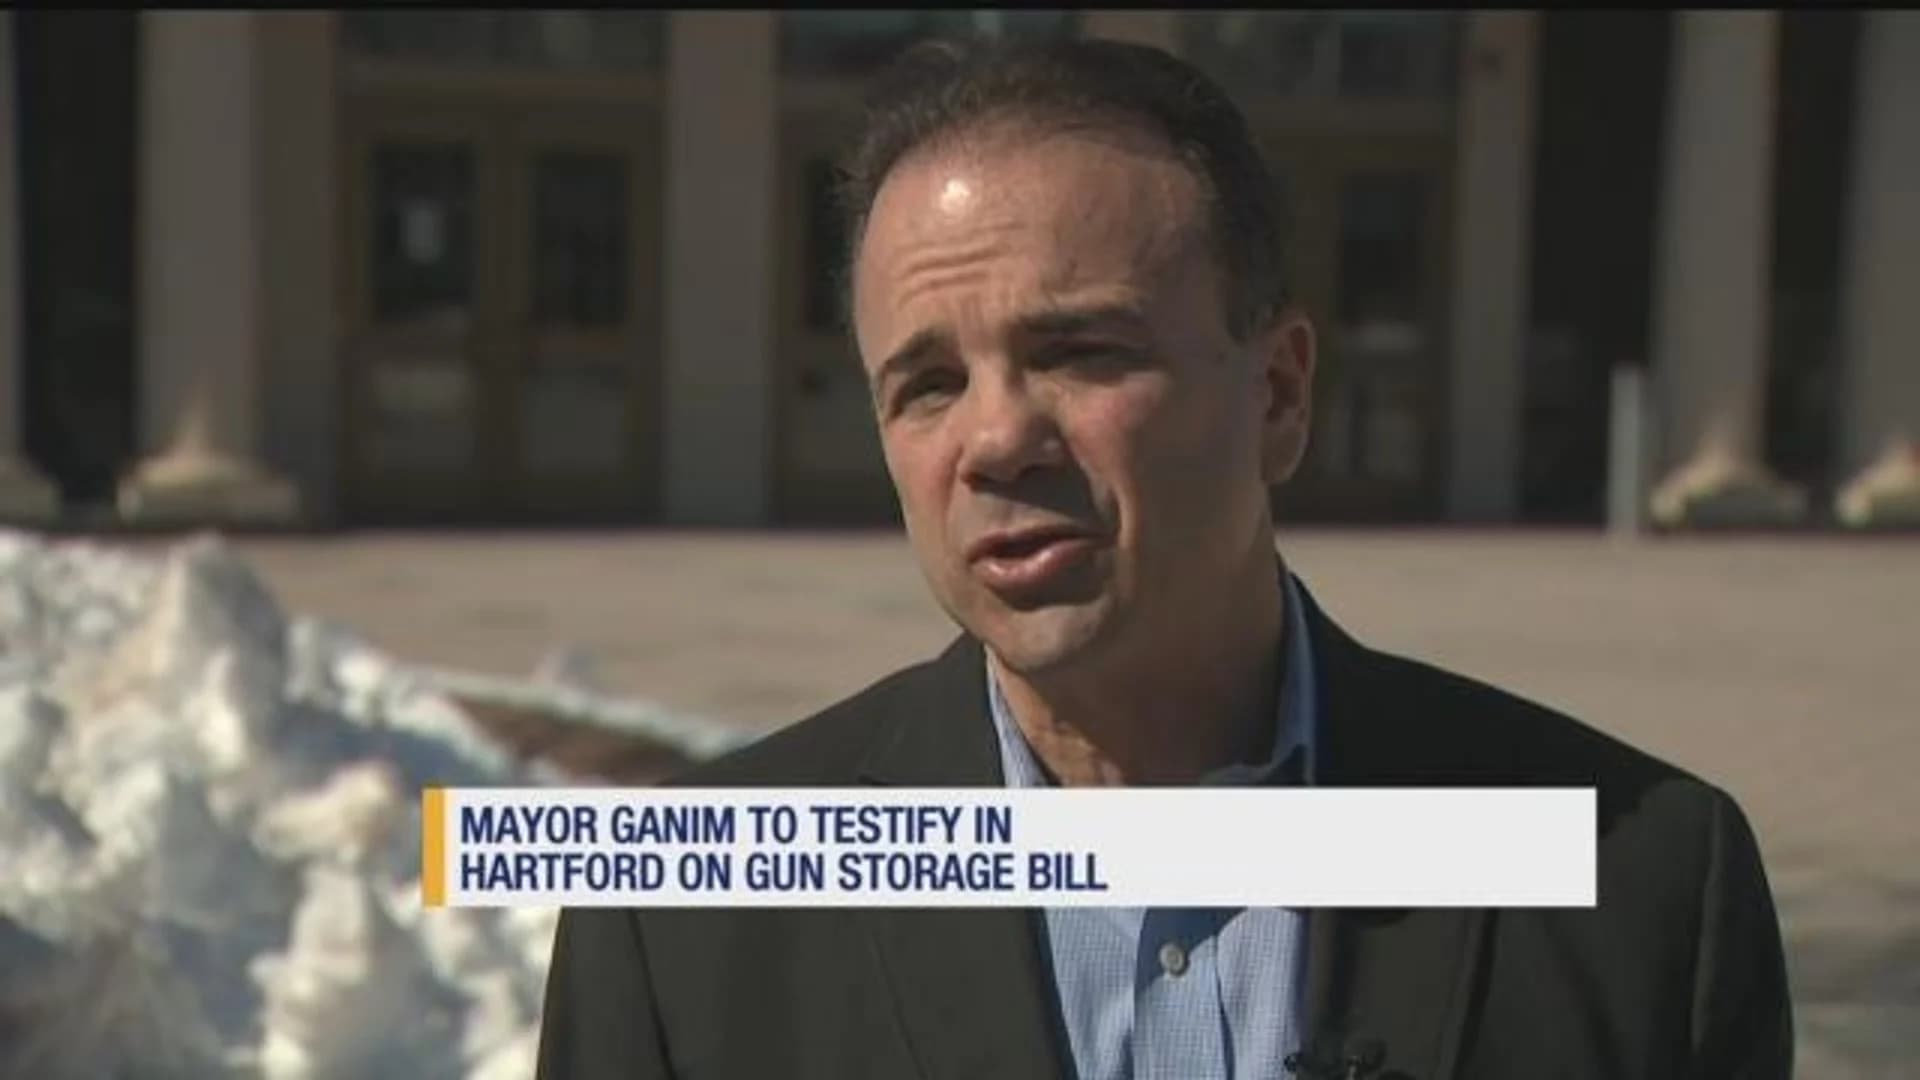 Bridgeport mayor to testify in Hartford on gun storage bill